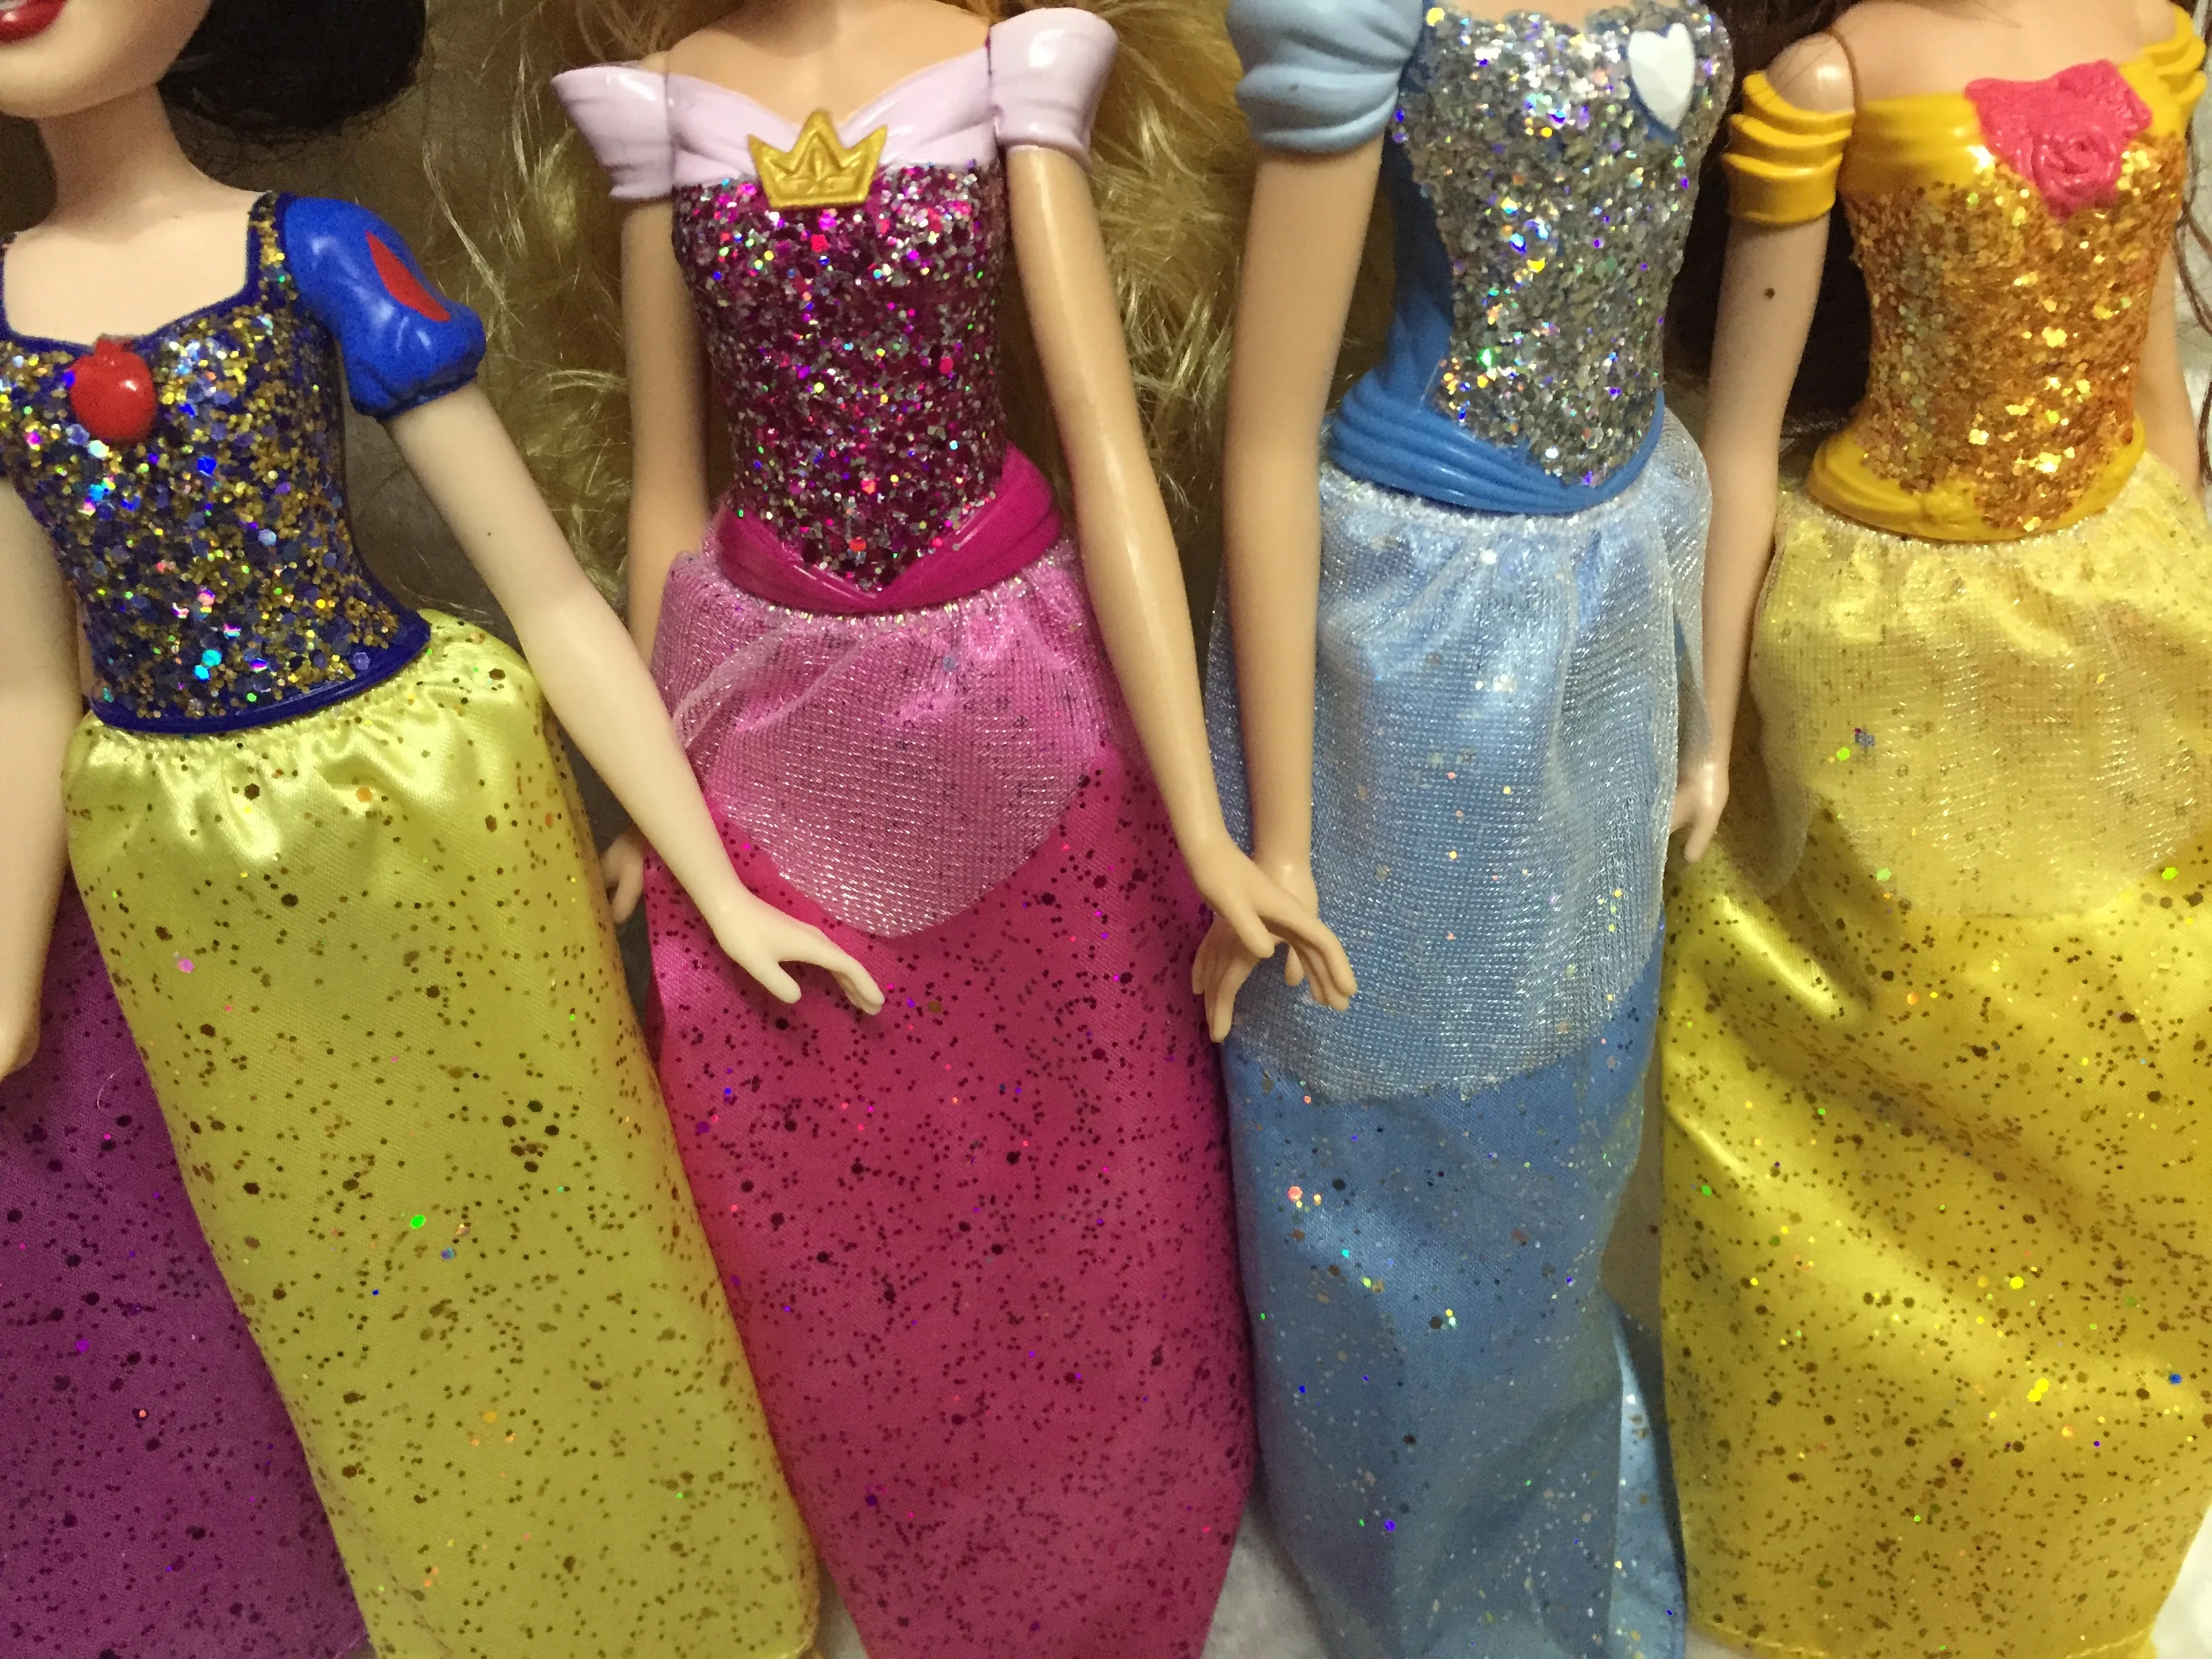 В виде красивой русалки для принца и принцессы куклы качественных товаров натуральная принцессы обувь для кукол принцессы куклы Blythe шарнирная кукла